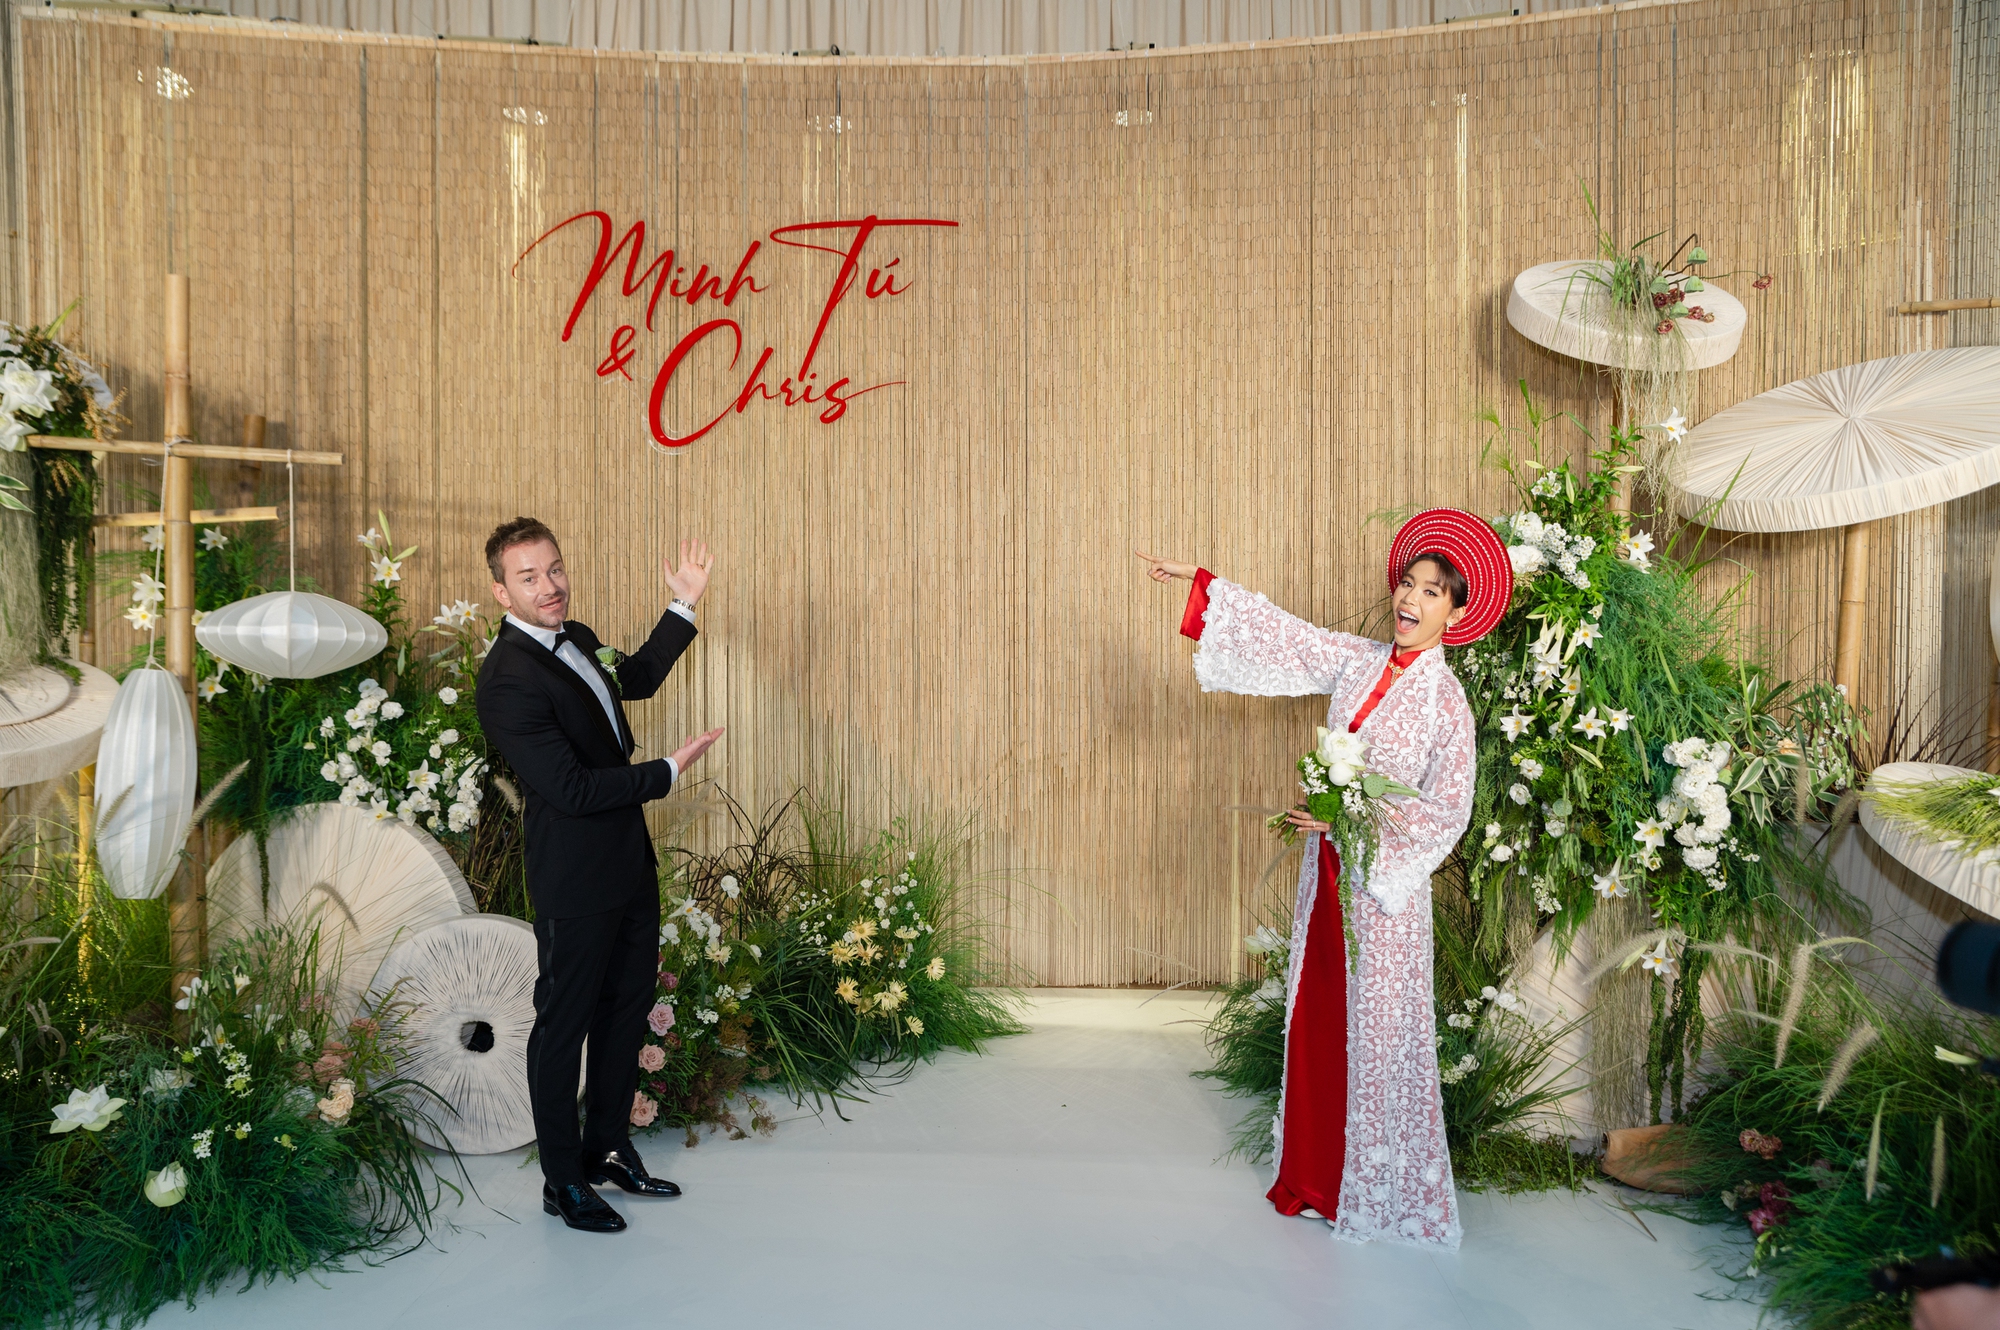 Toàn cảnh đám cưới Minh Tú: 3 bộ trang phục độc đáo, gắn hình ảnh bố lên hoa cưới- Ảnh 1.